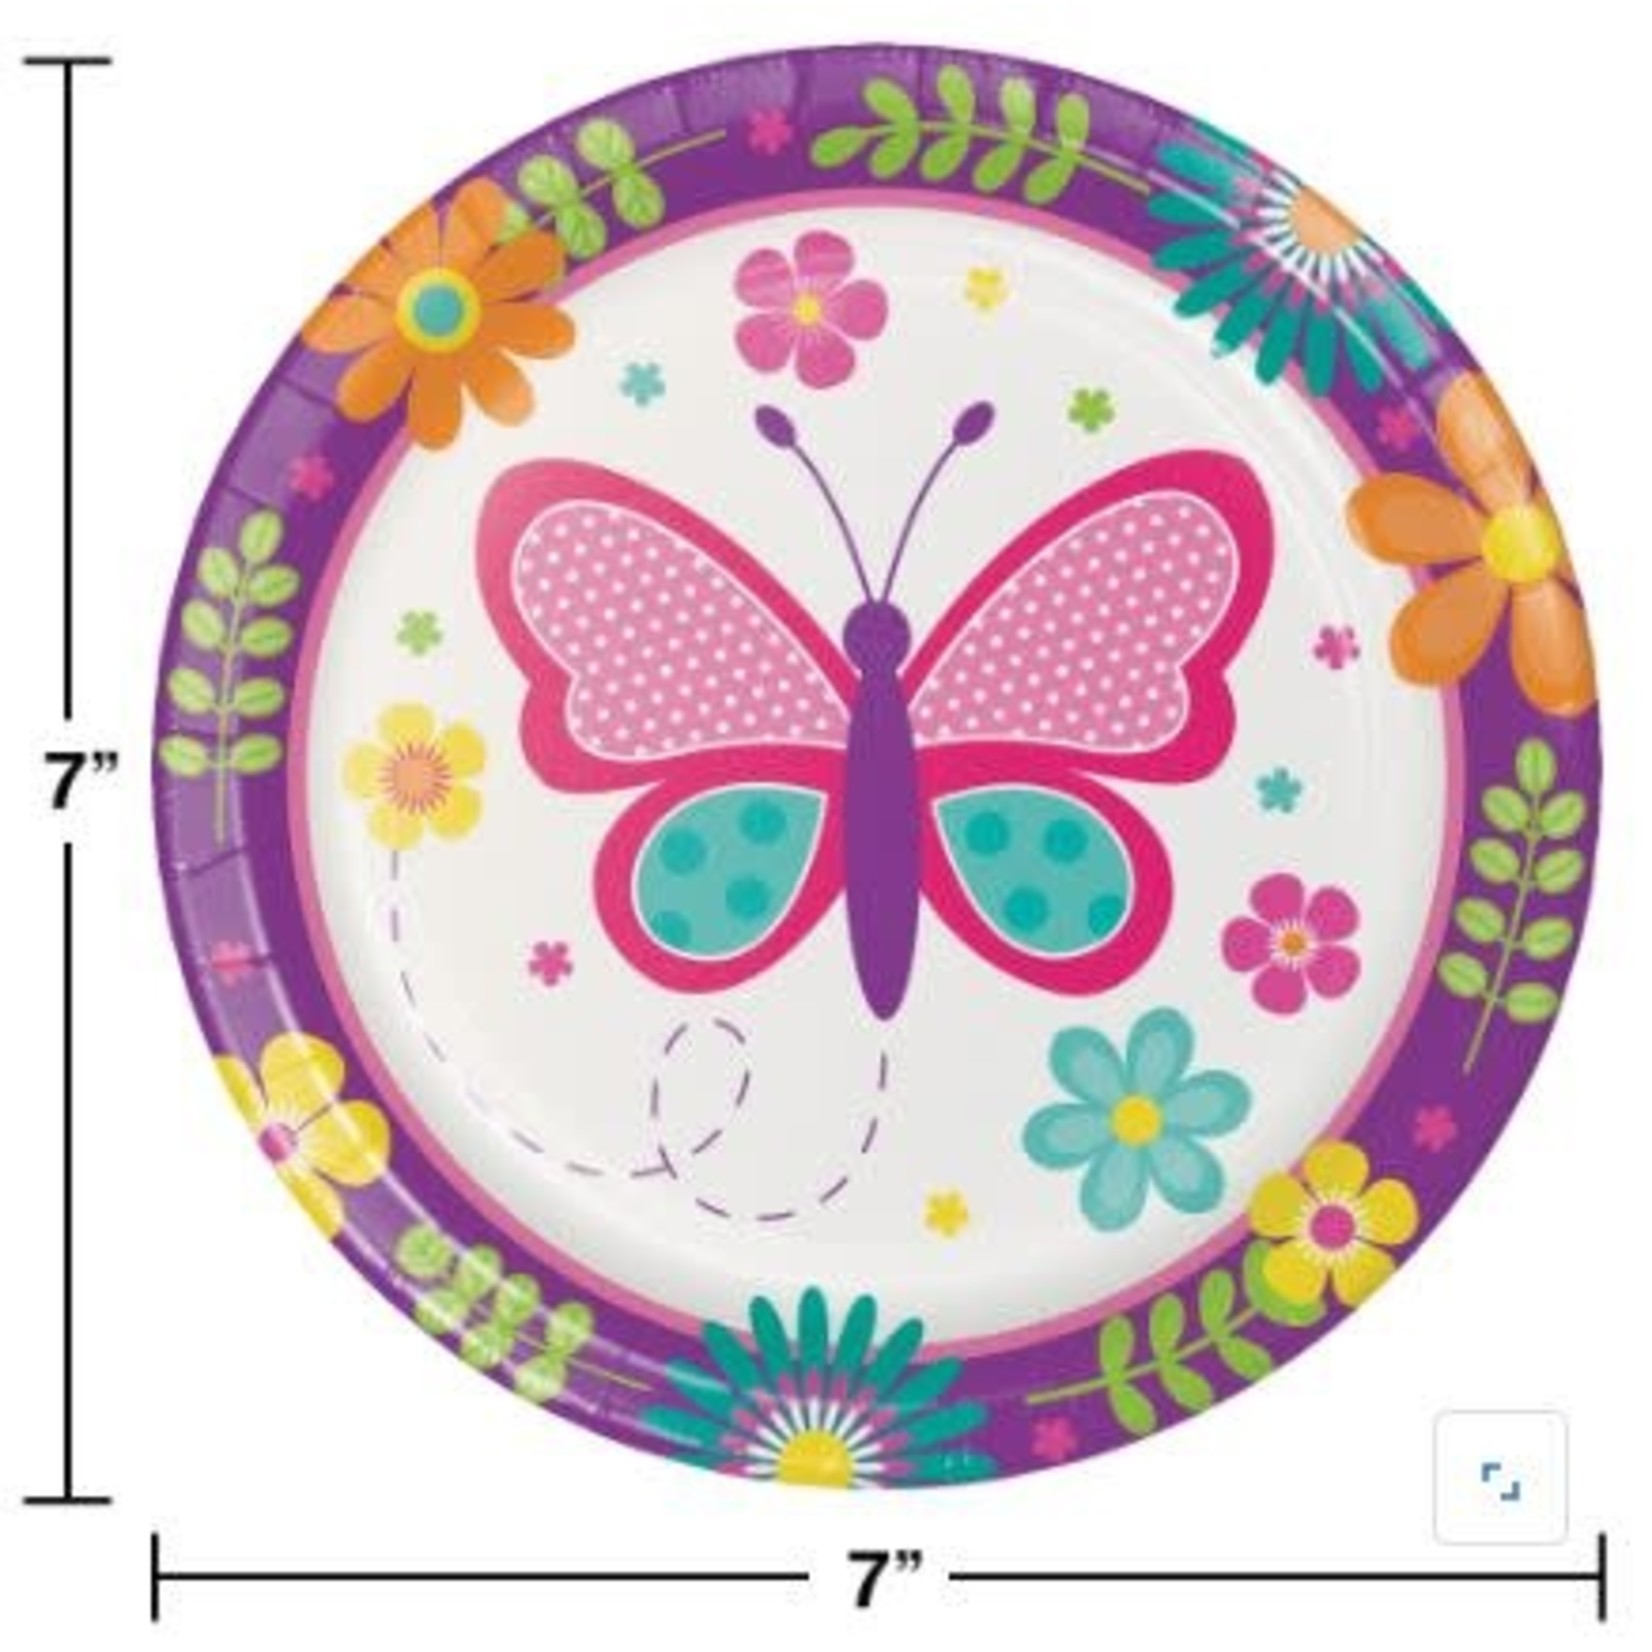 Butterfly Garden 7" Plates 8pcs